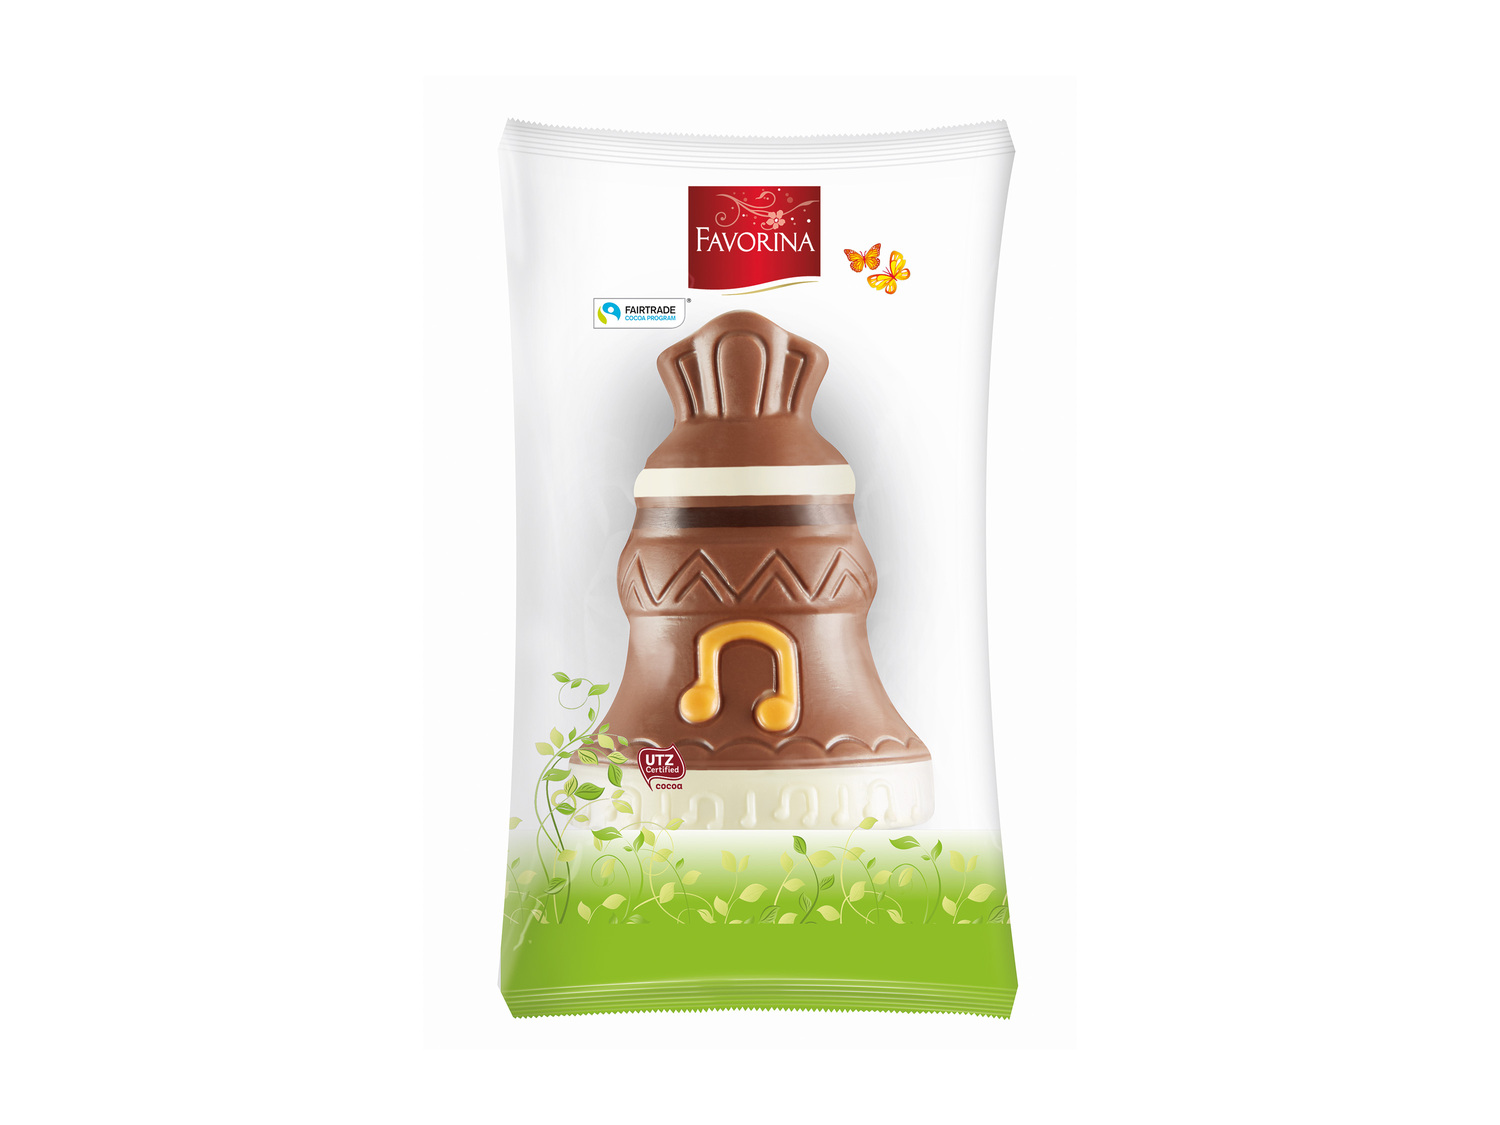 Mini moulages de Pâques , le prix 0.89 € 
- Au chocolat au lait
- Au choix ...